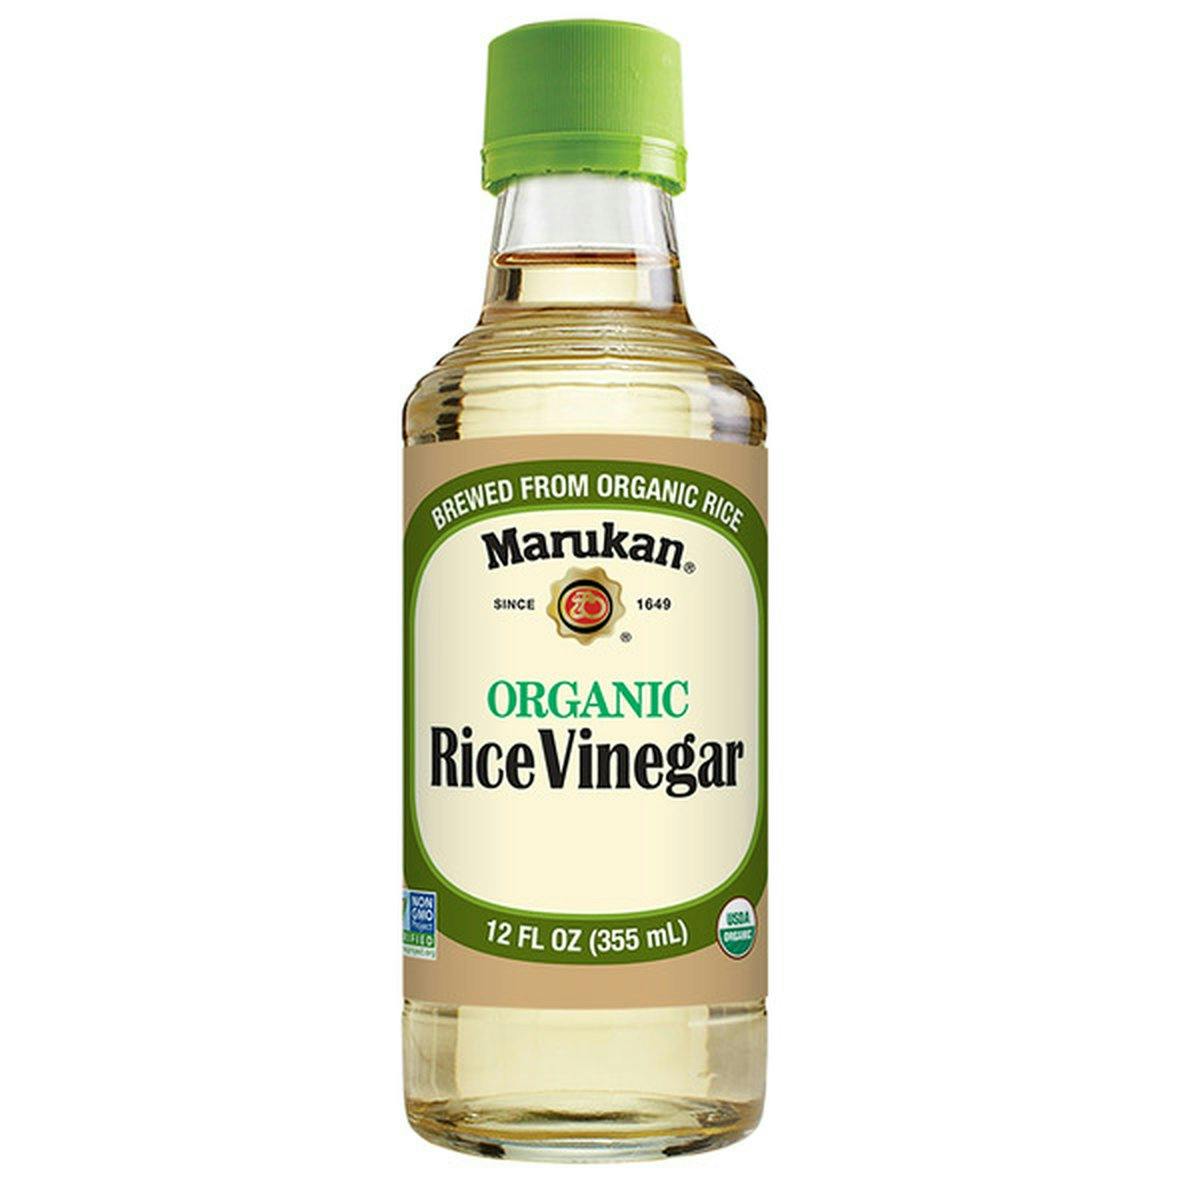 of vinegar